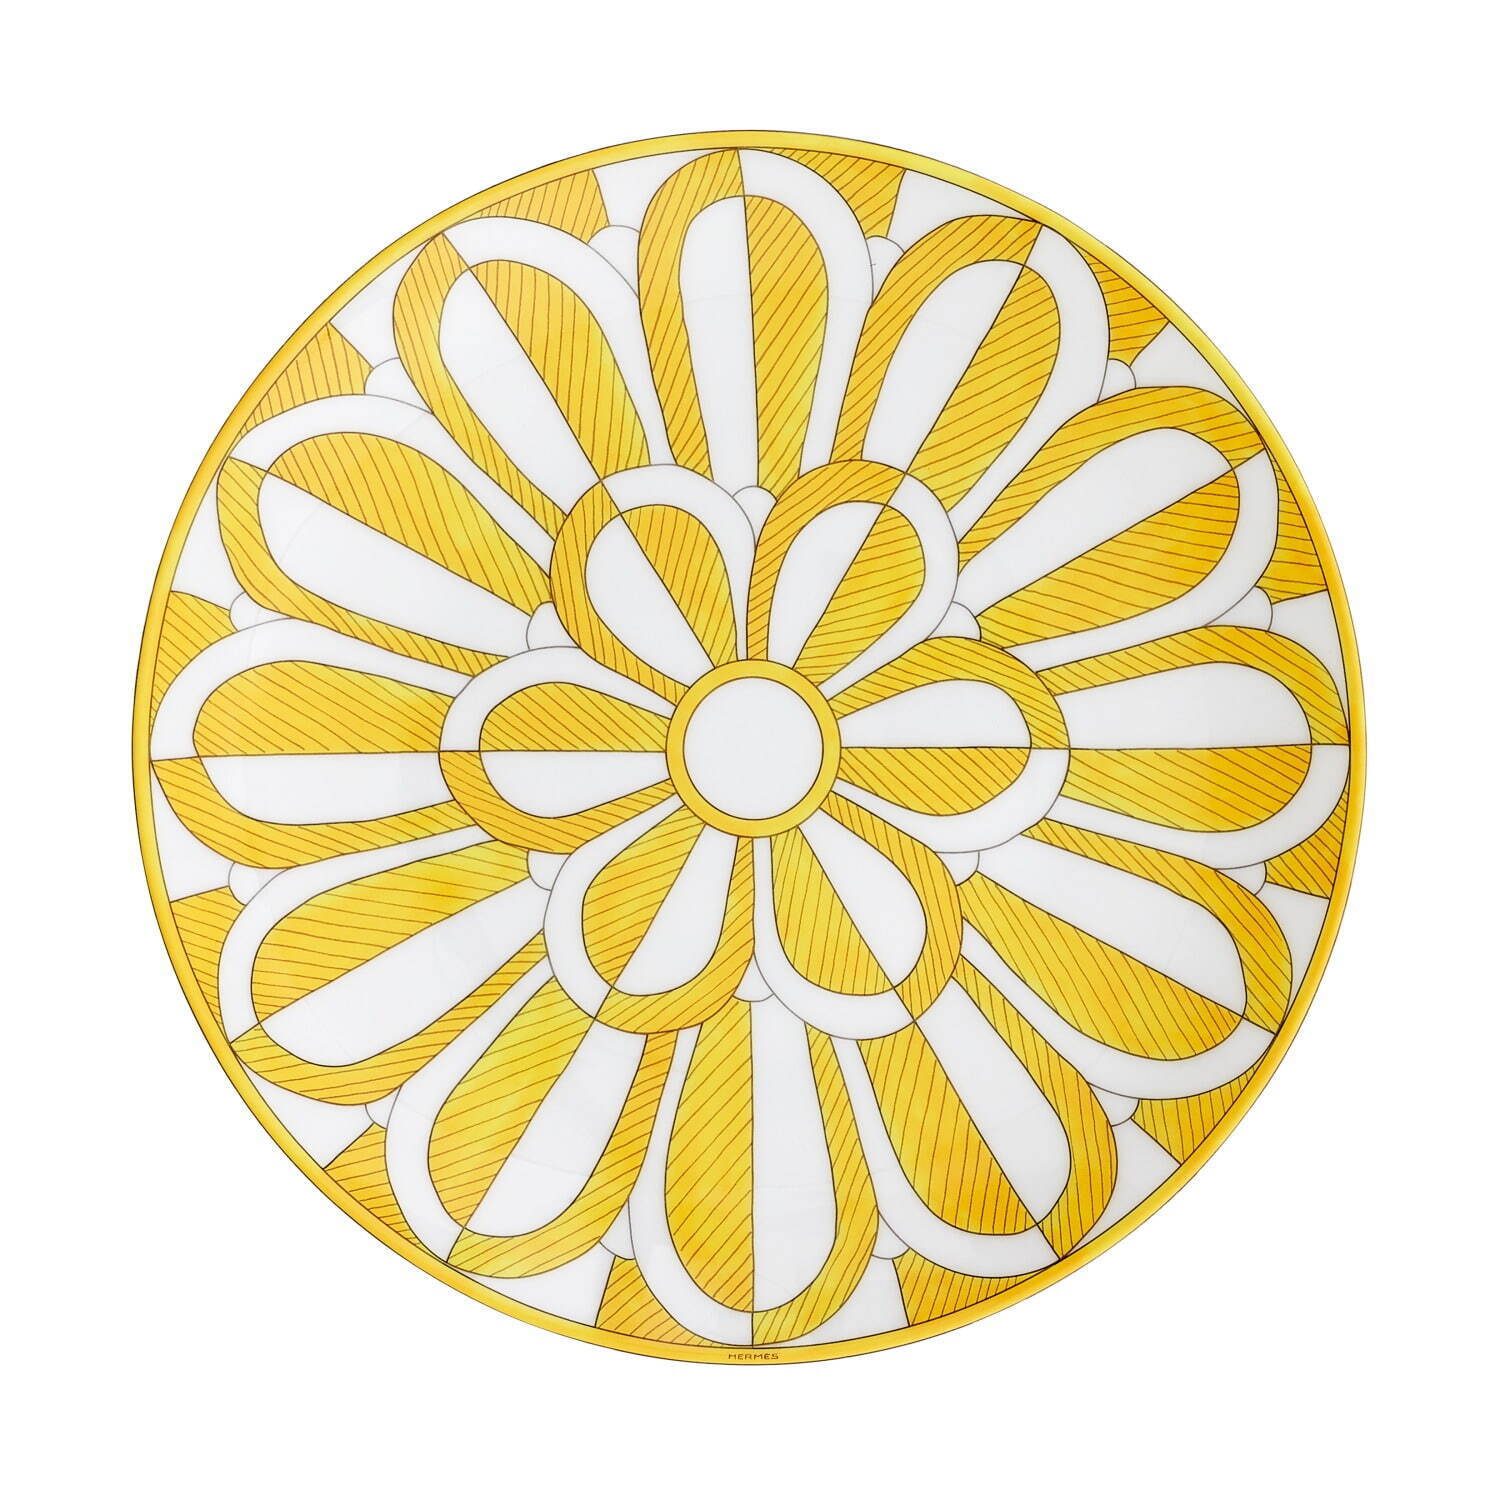 エルメス“太陽”に着想を得た新作テーブルウェア「ソレイユ ドゥ